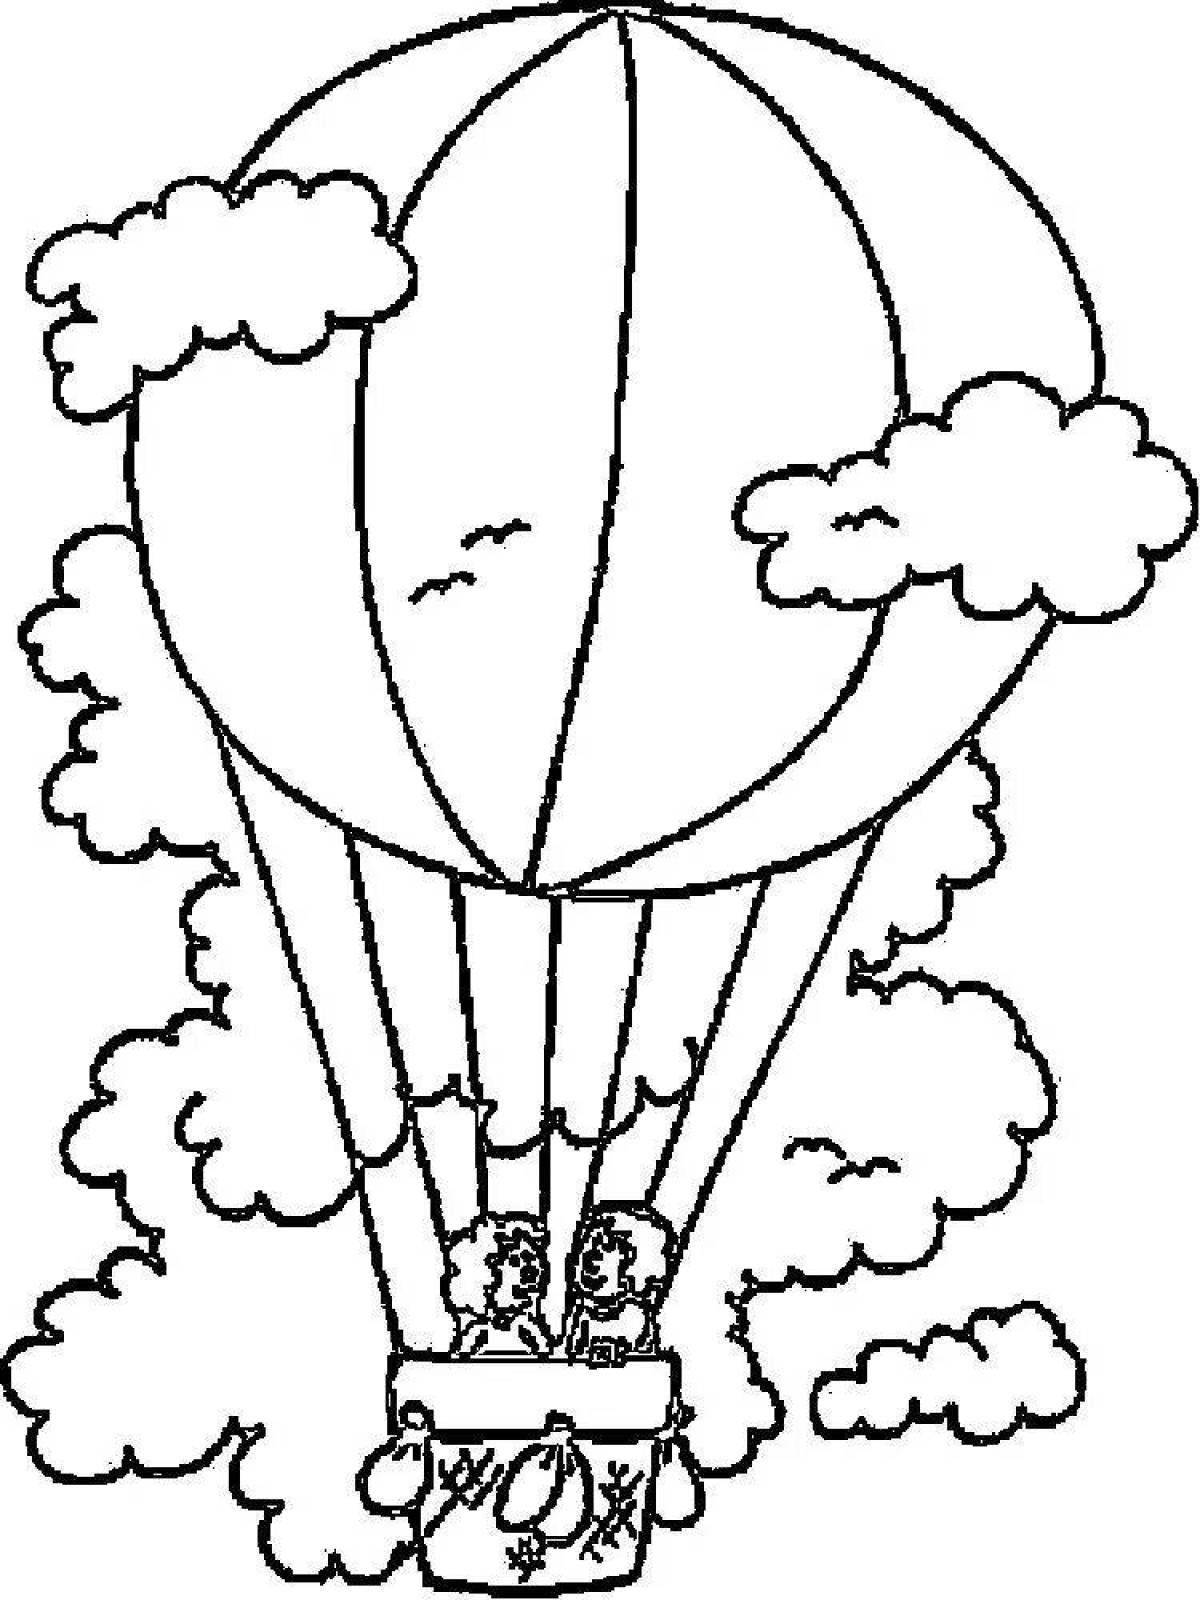 Воздушный шар раскраска для детей